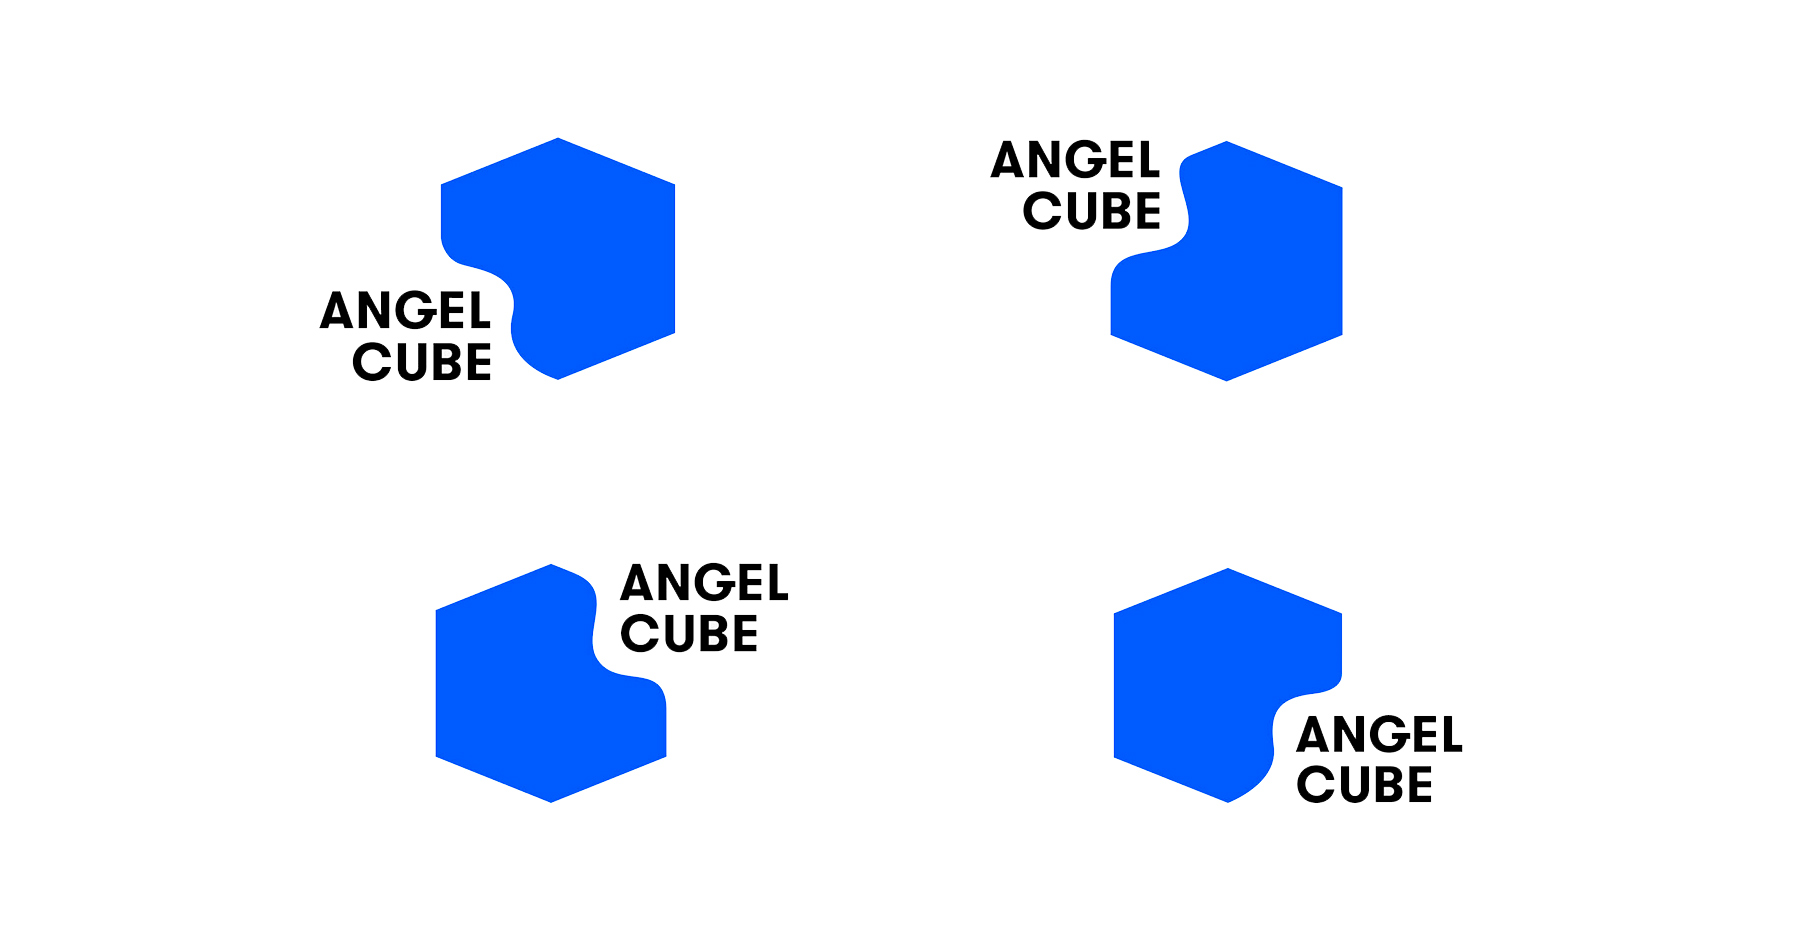 Angel Cube logo by Scott KIRKMAN